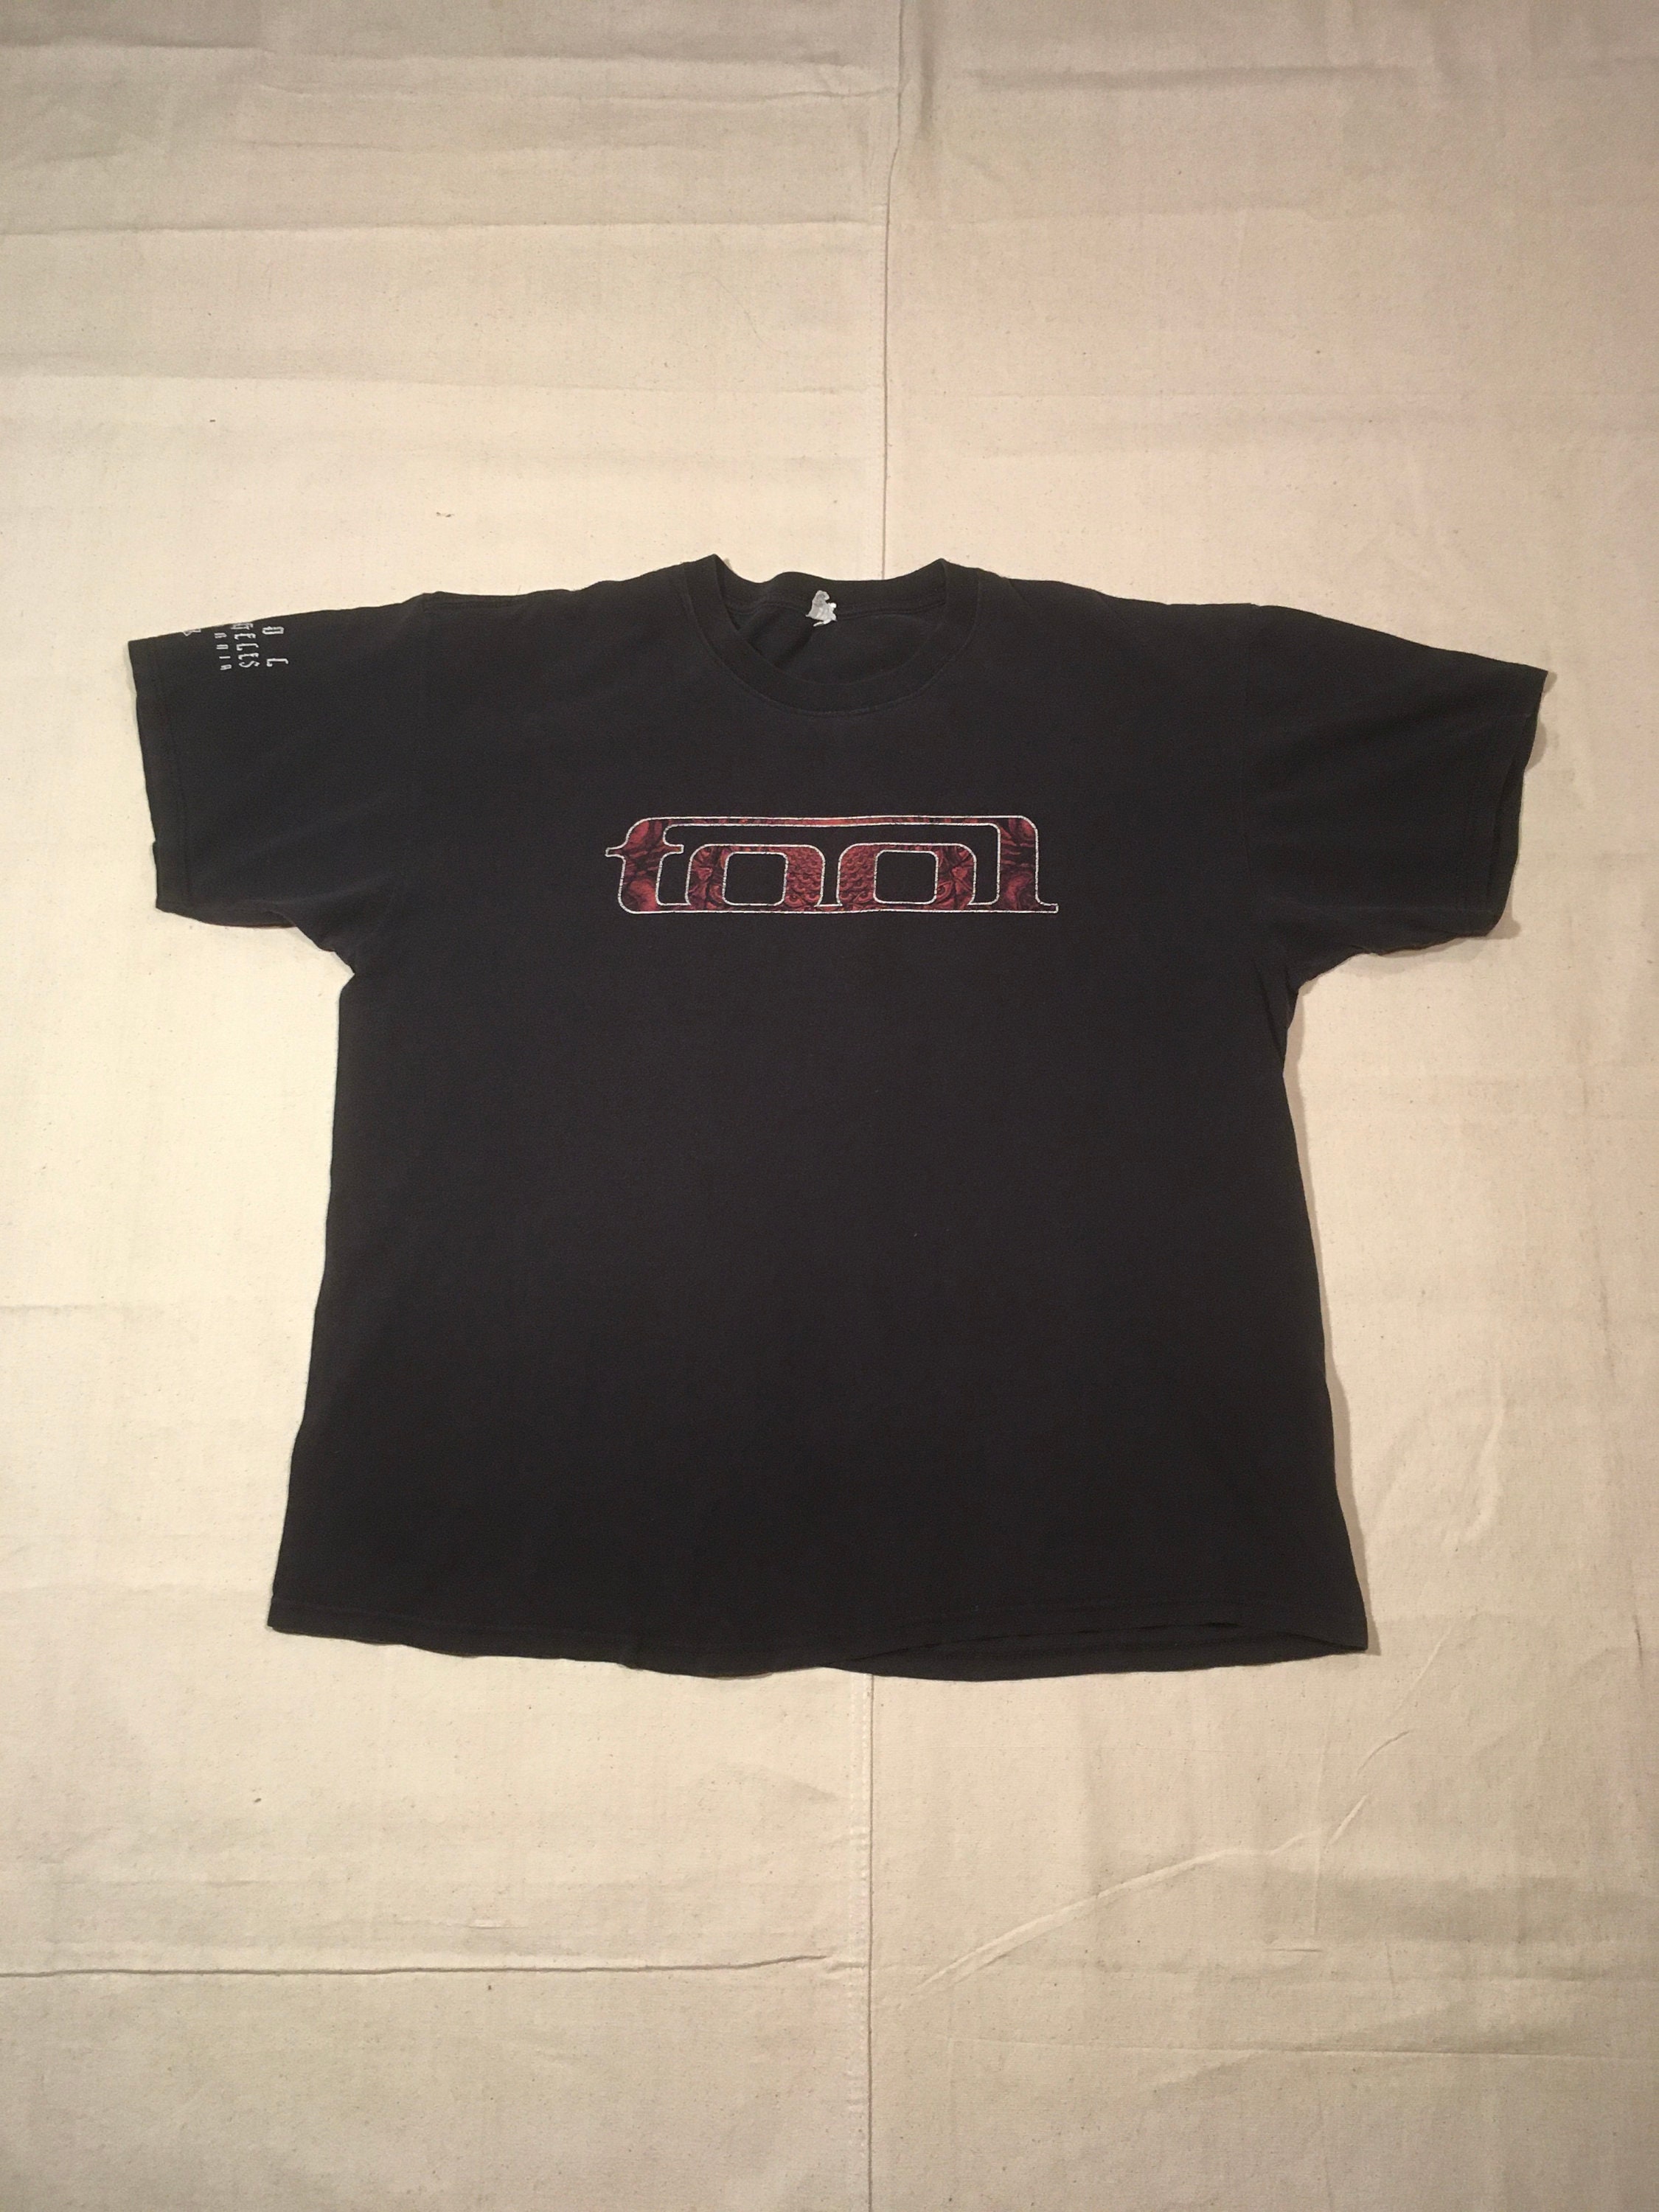 Tool Band T Shirt - Etsy